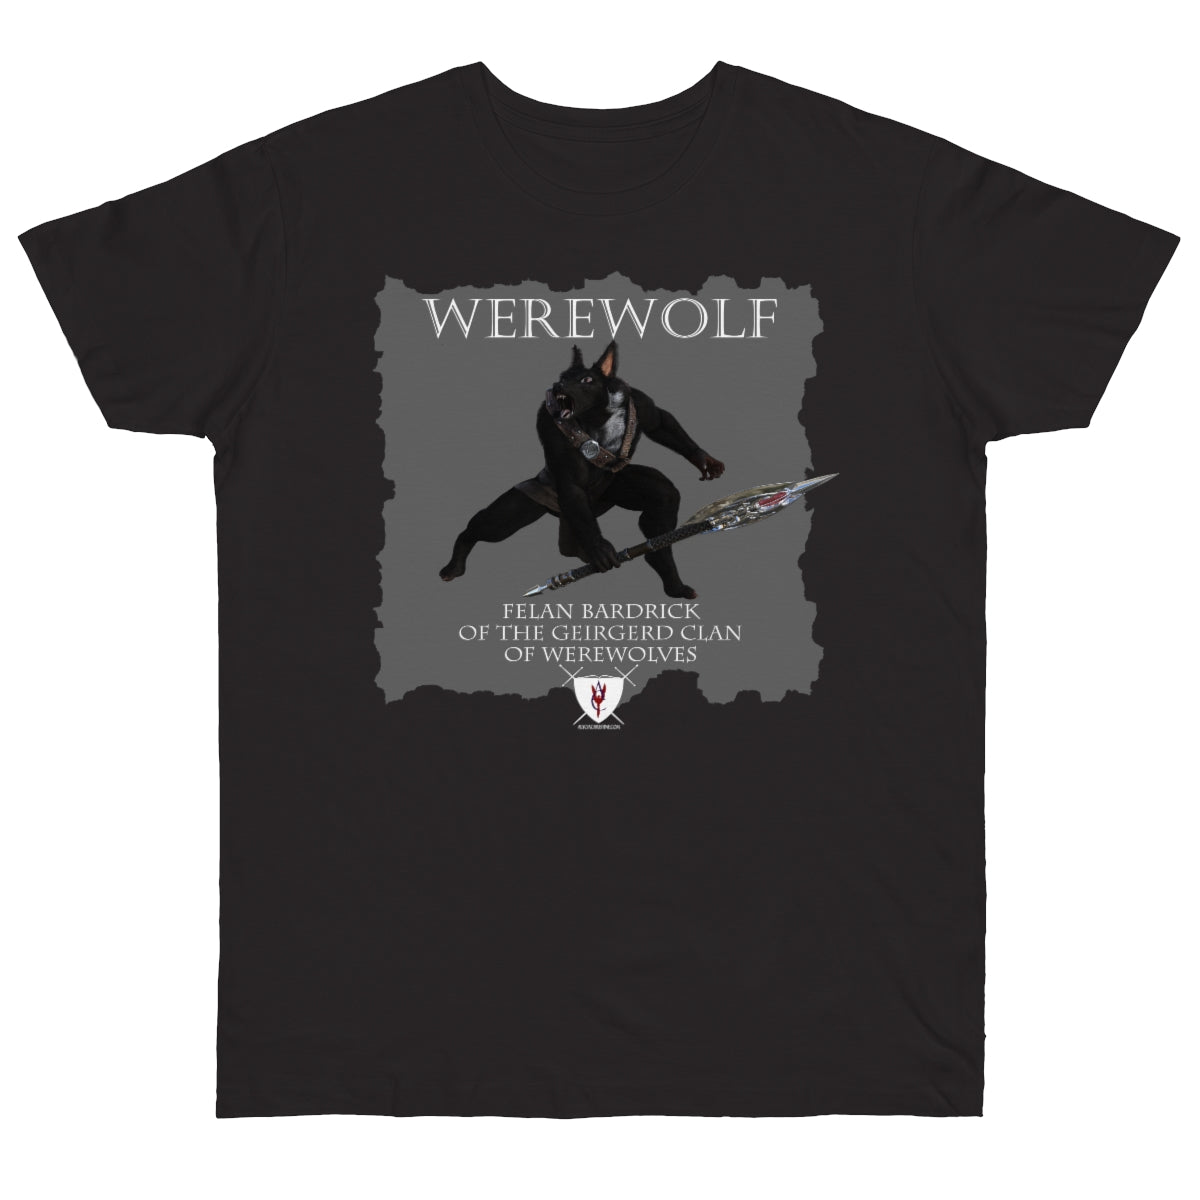 Men's Jersey T-shirt - Werewolf Felan & Bardrick Crest